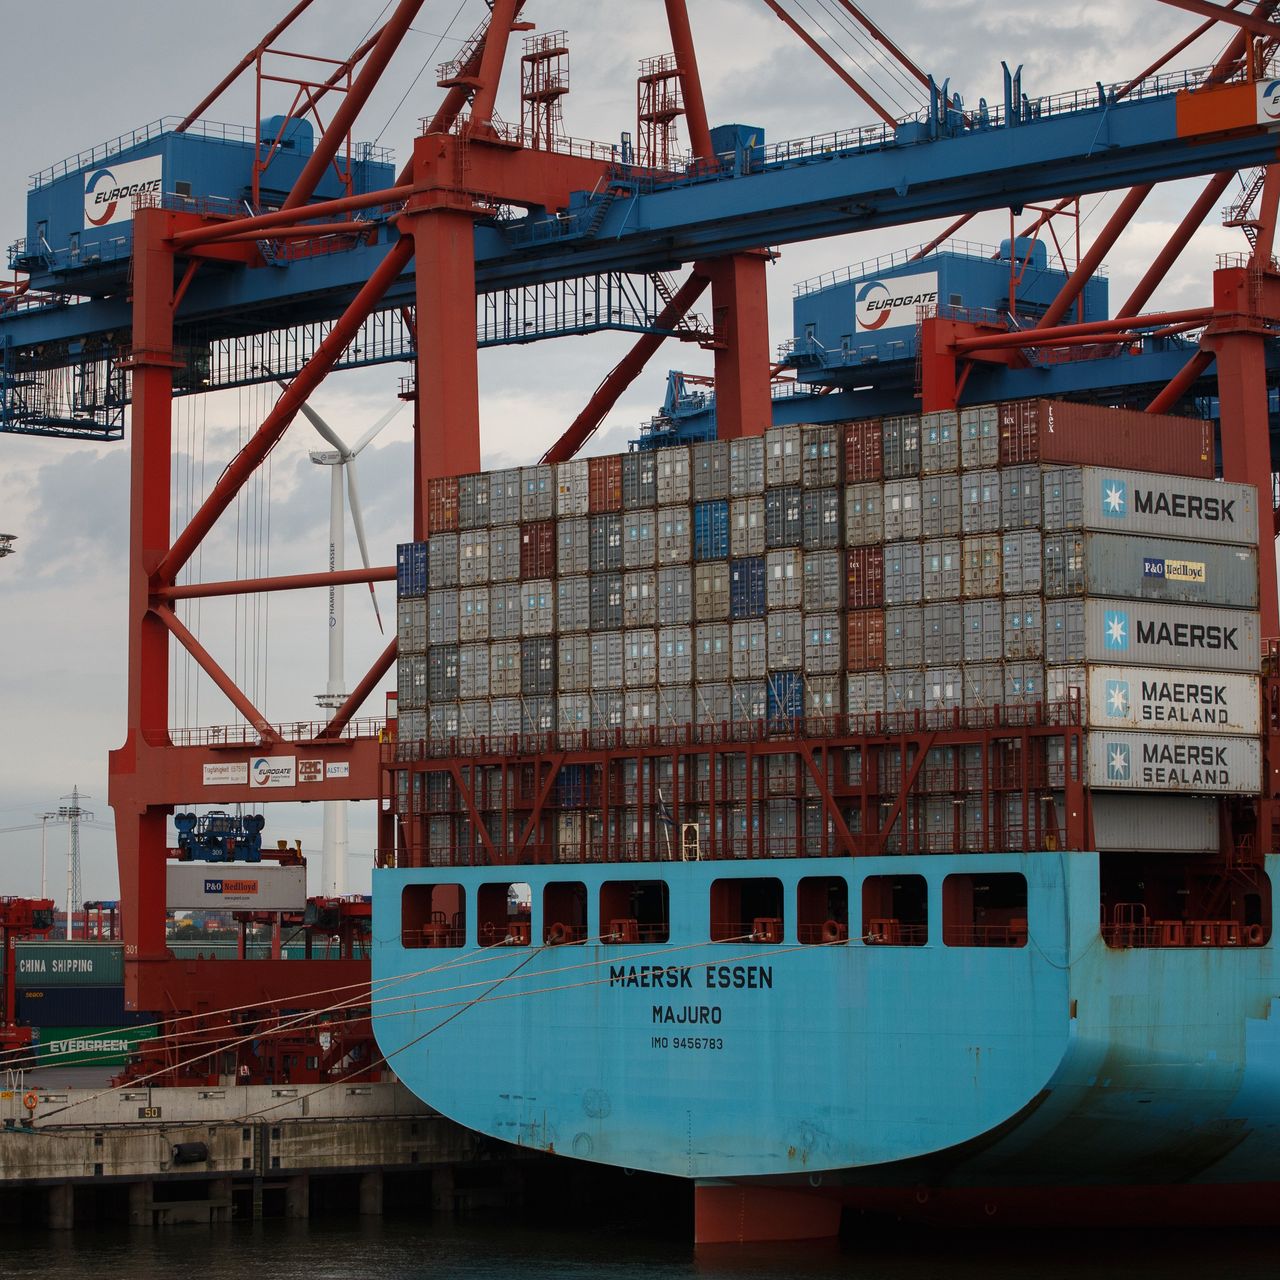 长滩港宣布与亚马逊合作开发新项